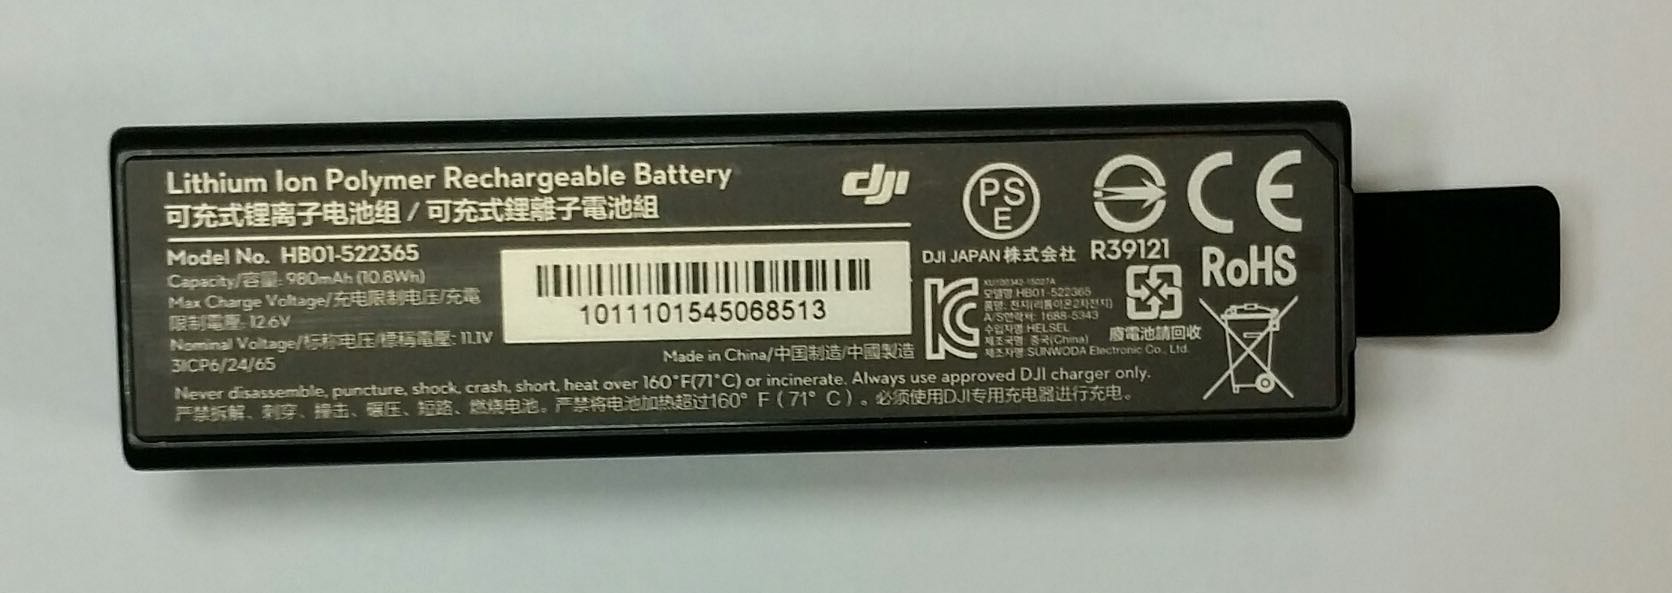 OSMO battery.jpg